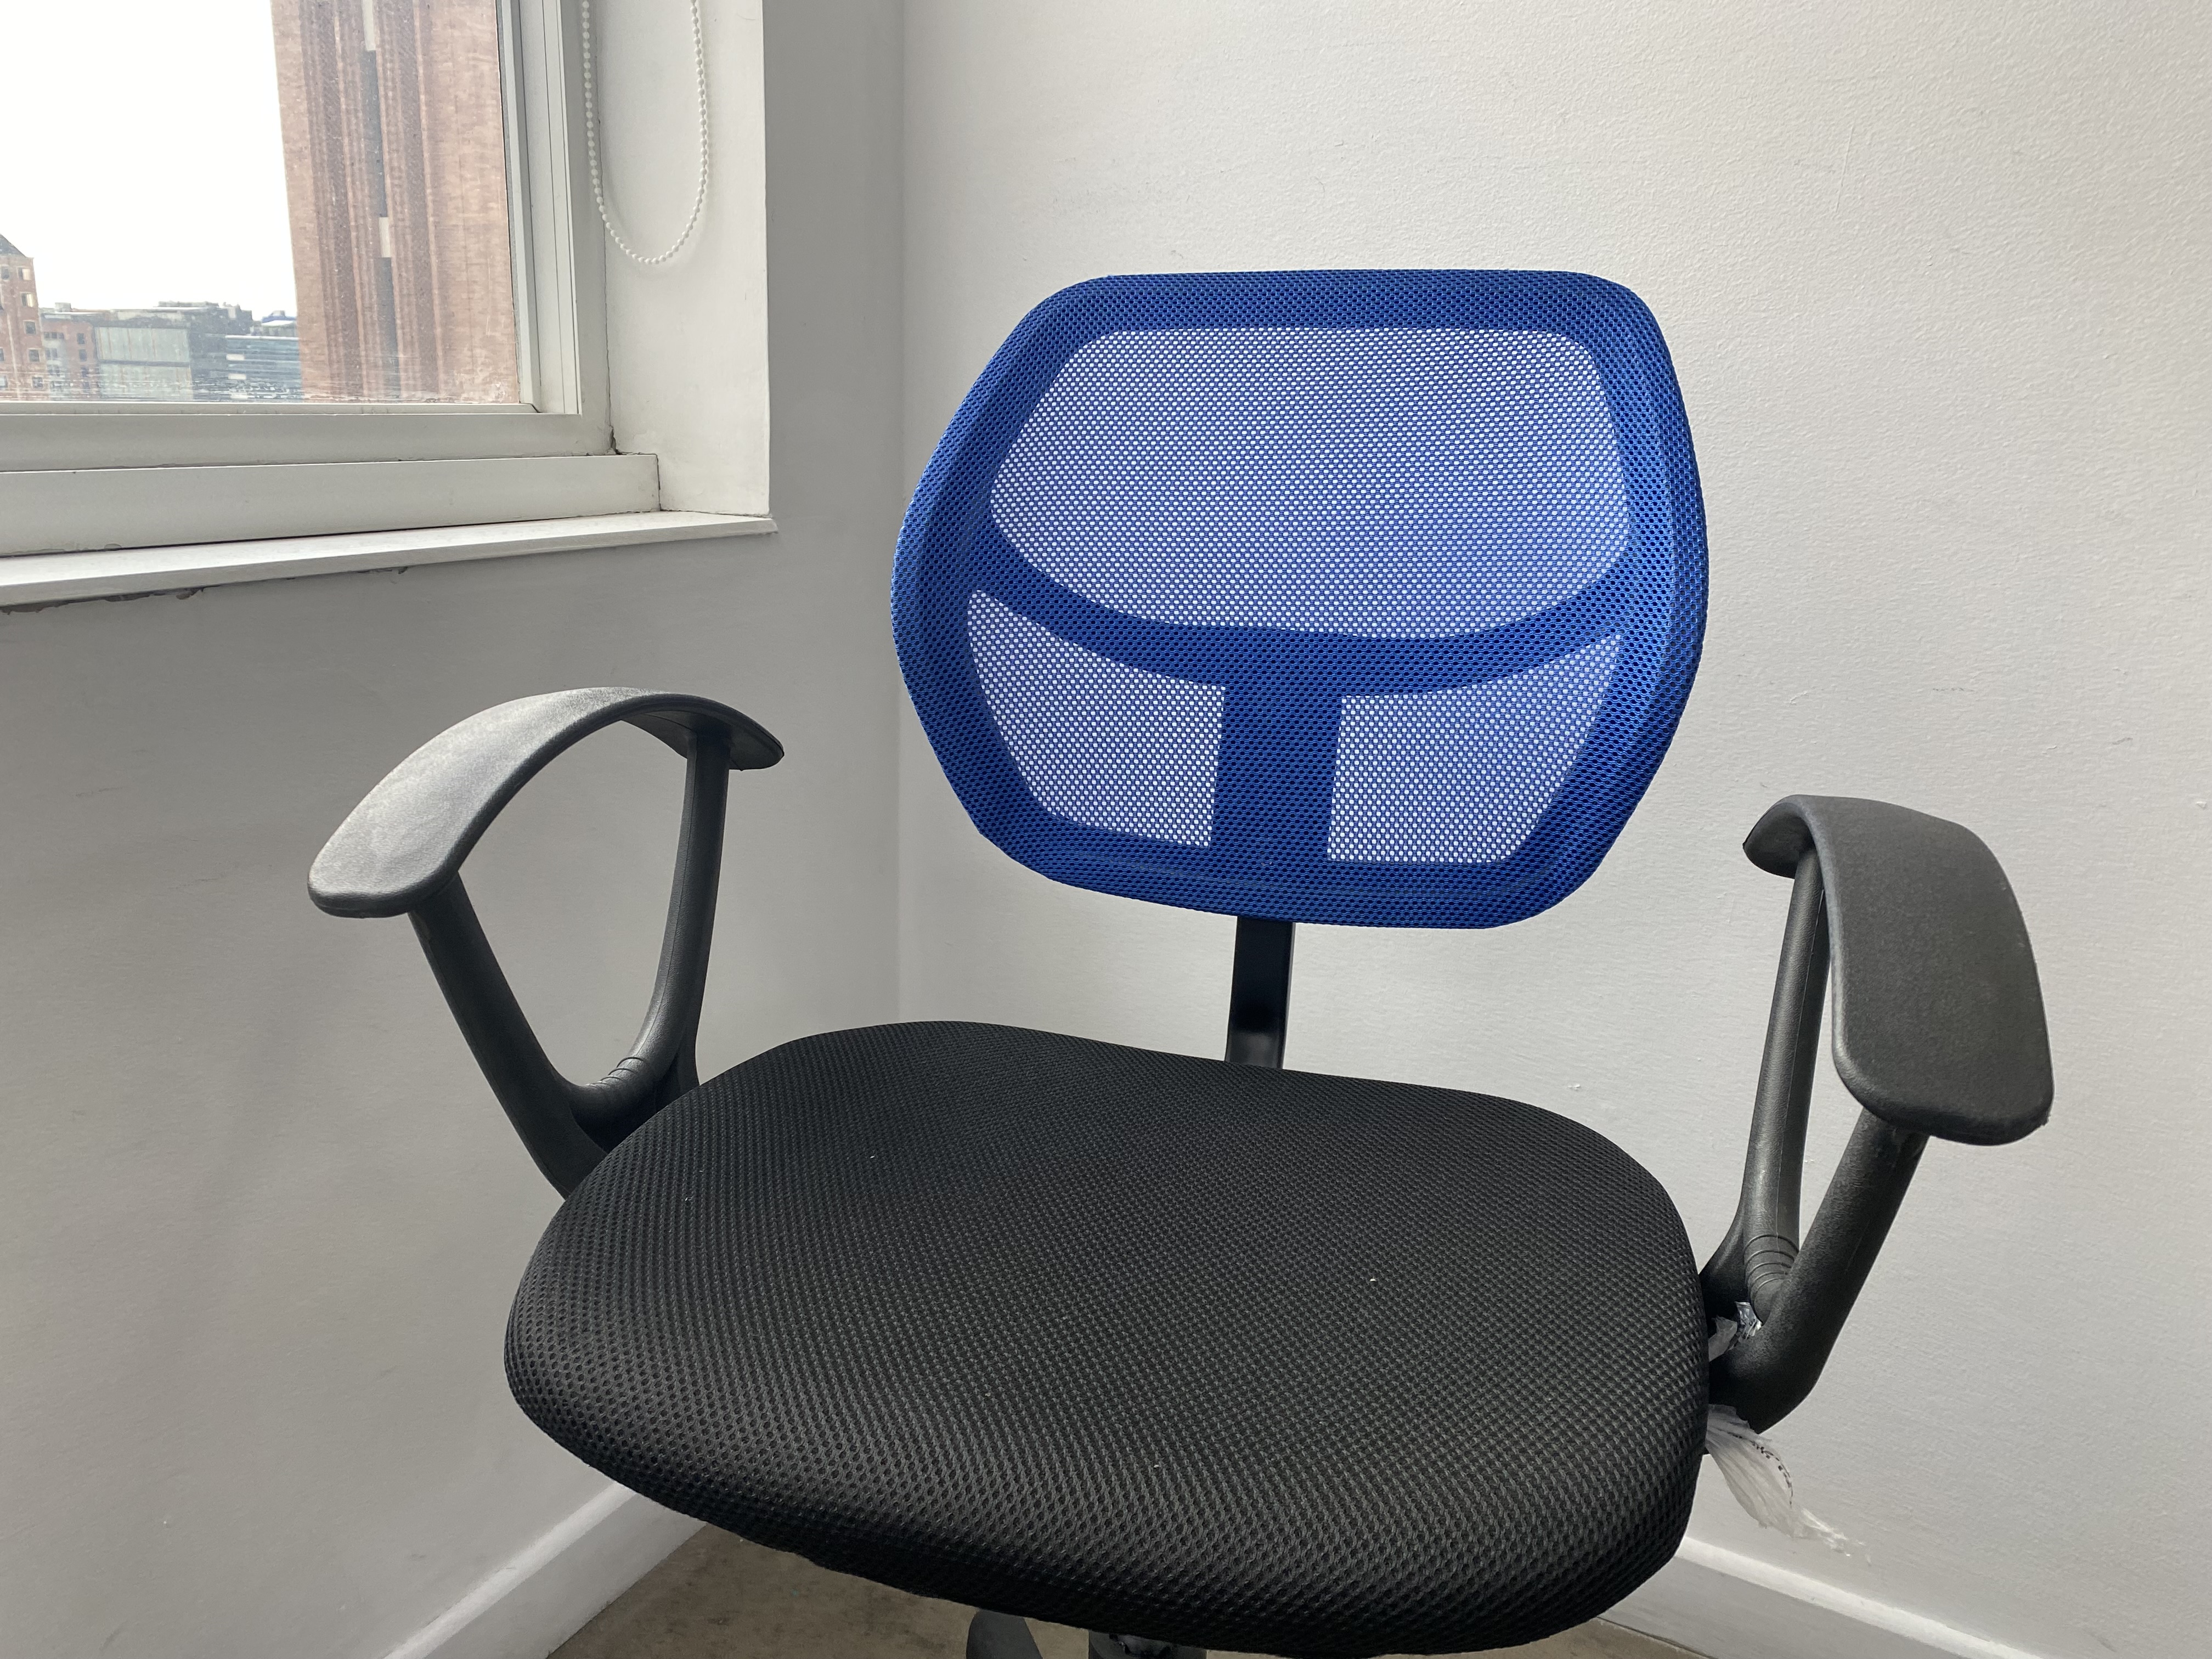 Foto real de una silla color azul con mallas. (Infobae)